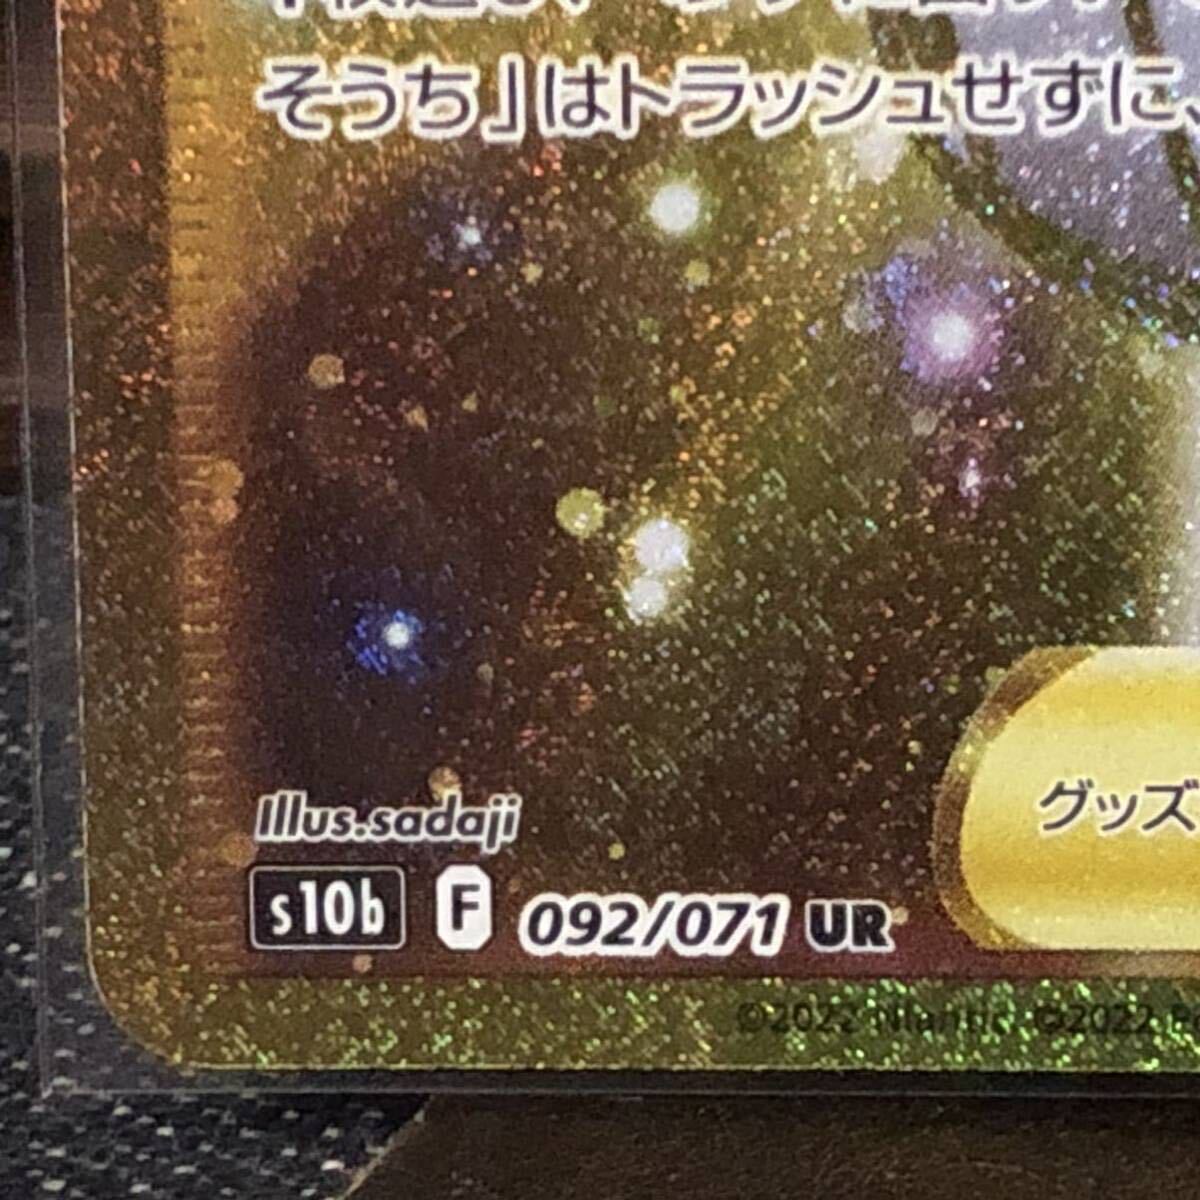 【即決/送料無料】 ふかそうち UR 092／071 s10b ポケモンカード ウルトラレア Pokemon GO